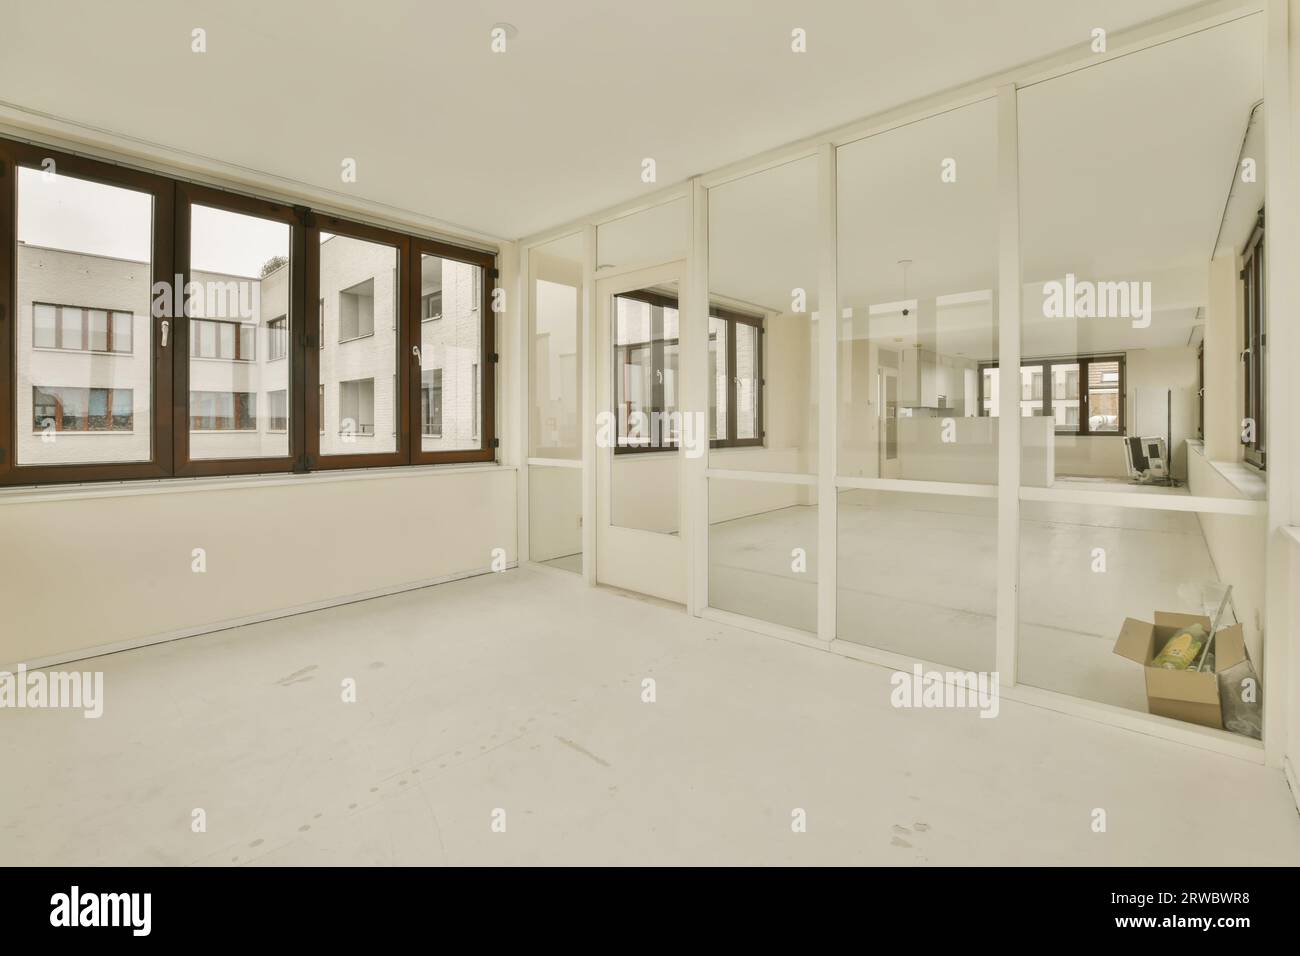 Das geräumige, renovierte Apartment verfügt über große Fenster und Glaswände zwischen leeren Zimmern mit weißen Wänden und Böden Stockfoto